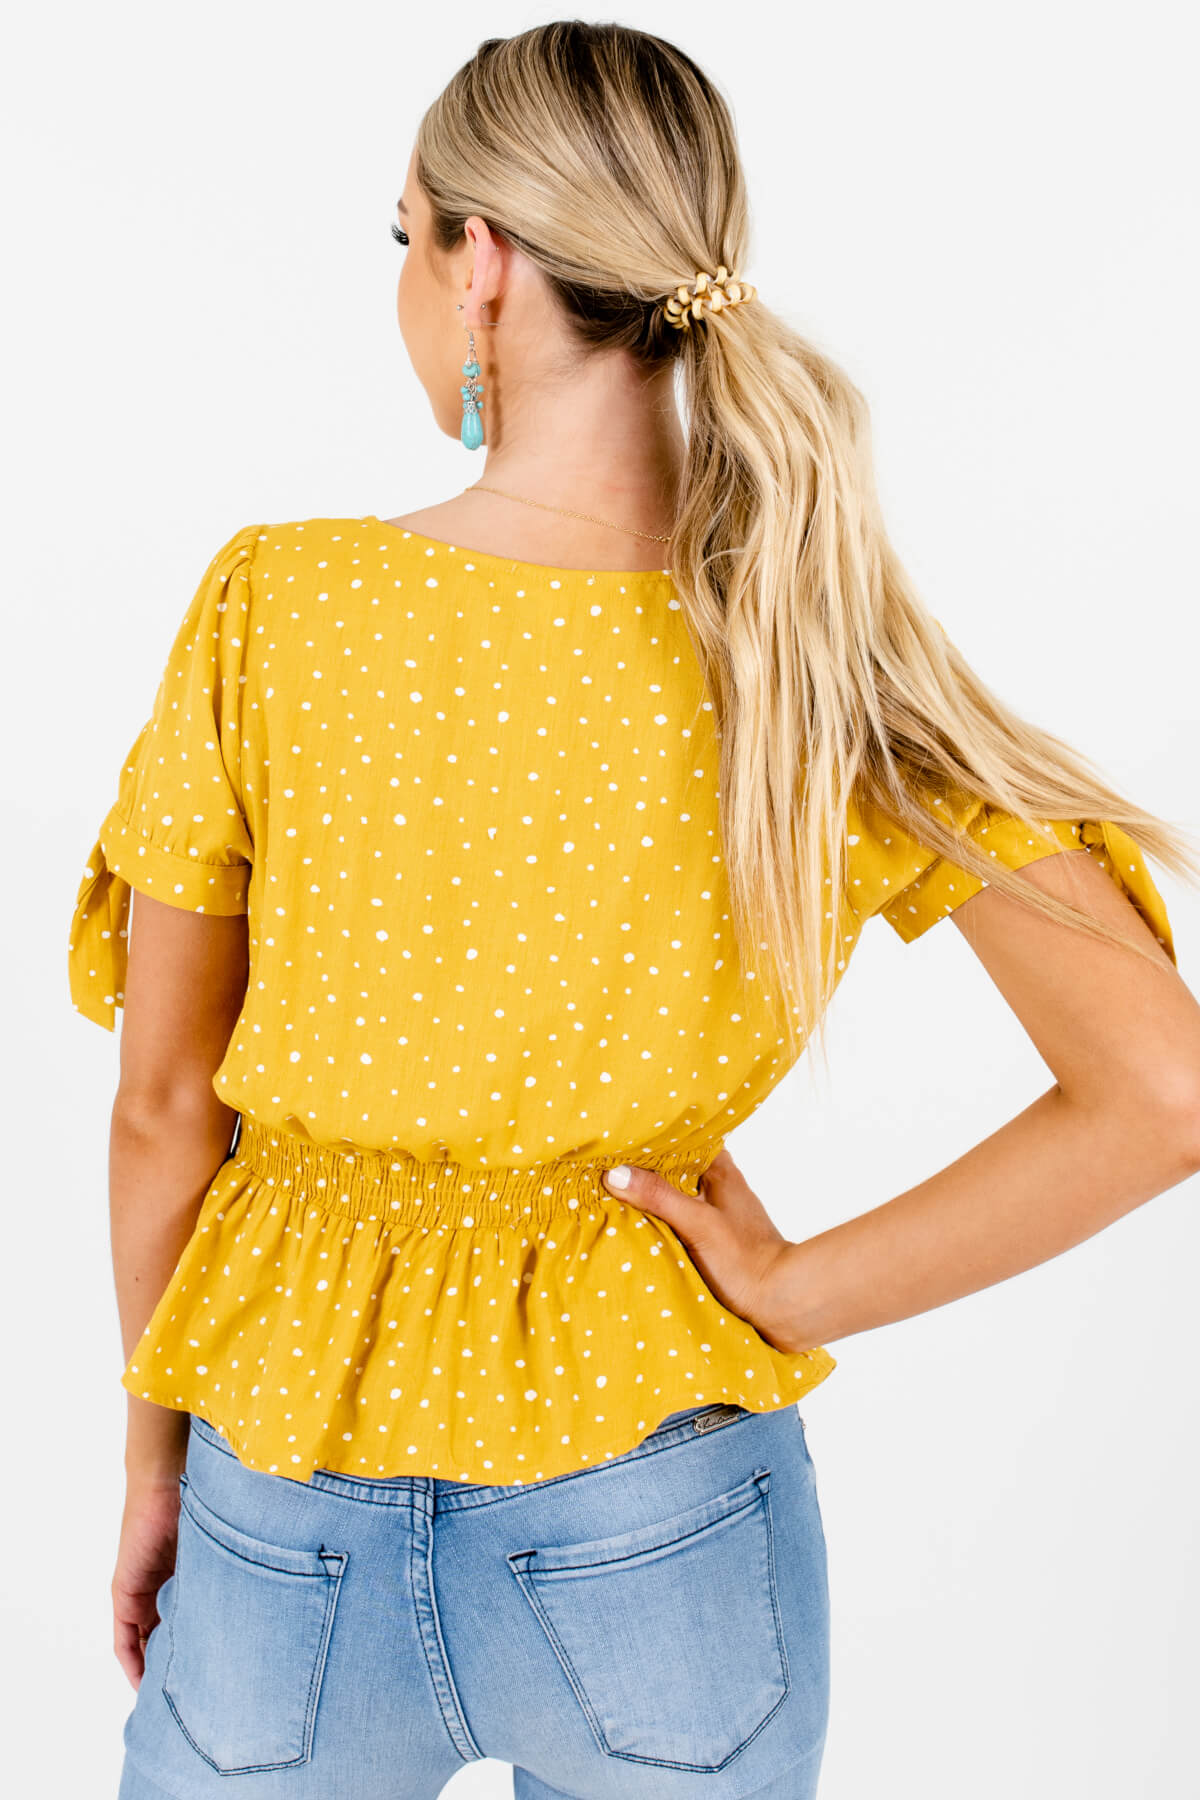 Women's Mustard Yellow Self-Tie Sleeve Boutique Tops